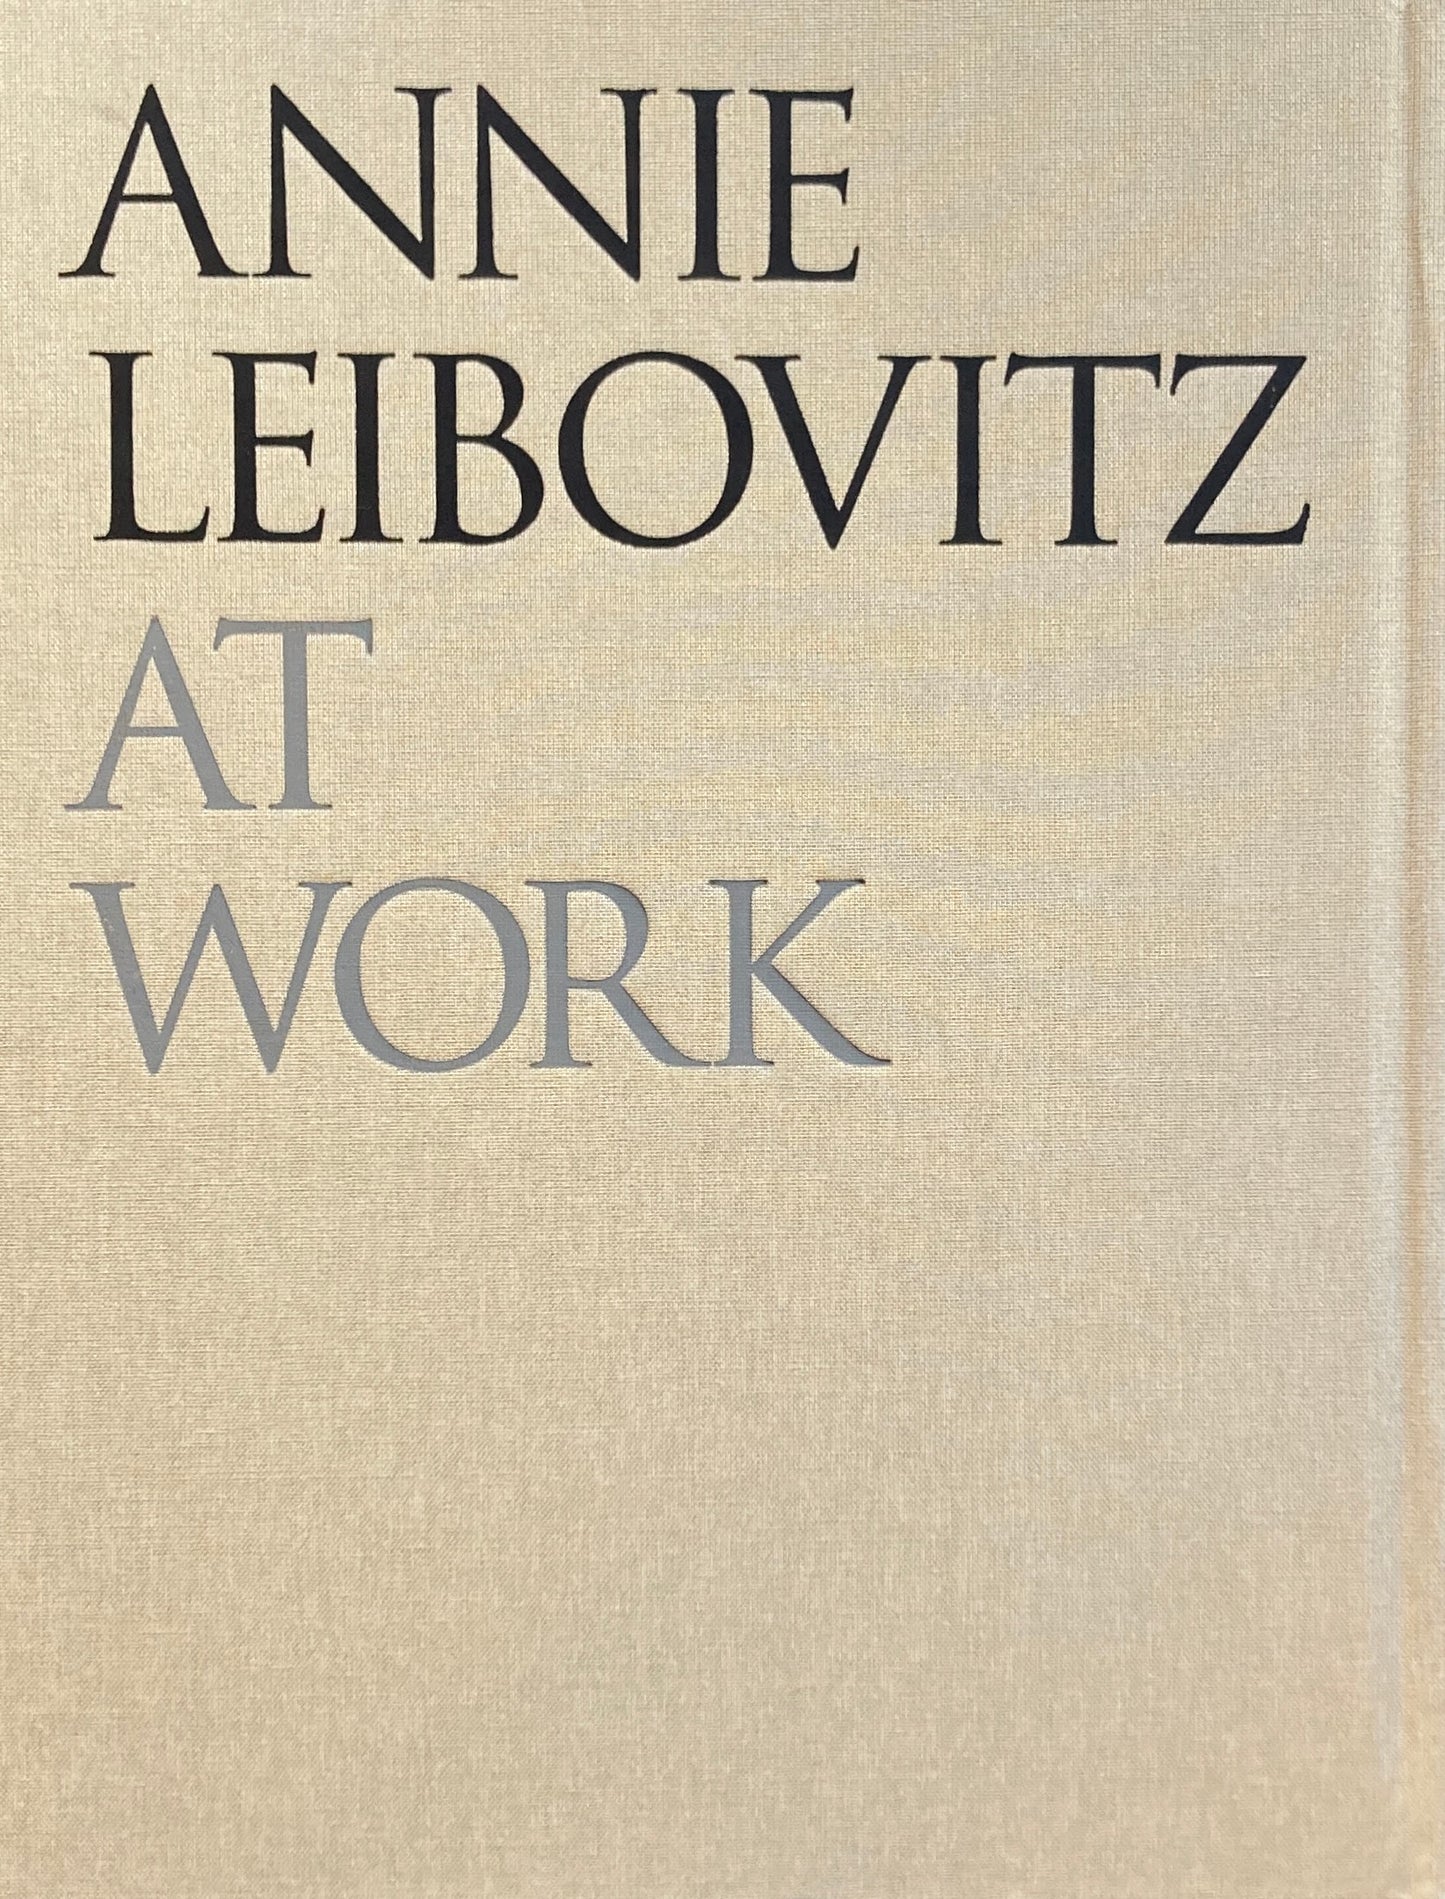 ANNIE LEIBOVITZ  AT WORK